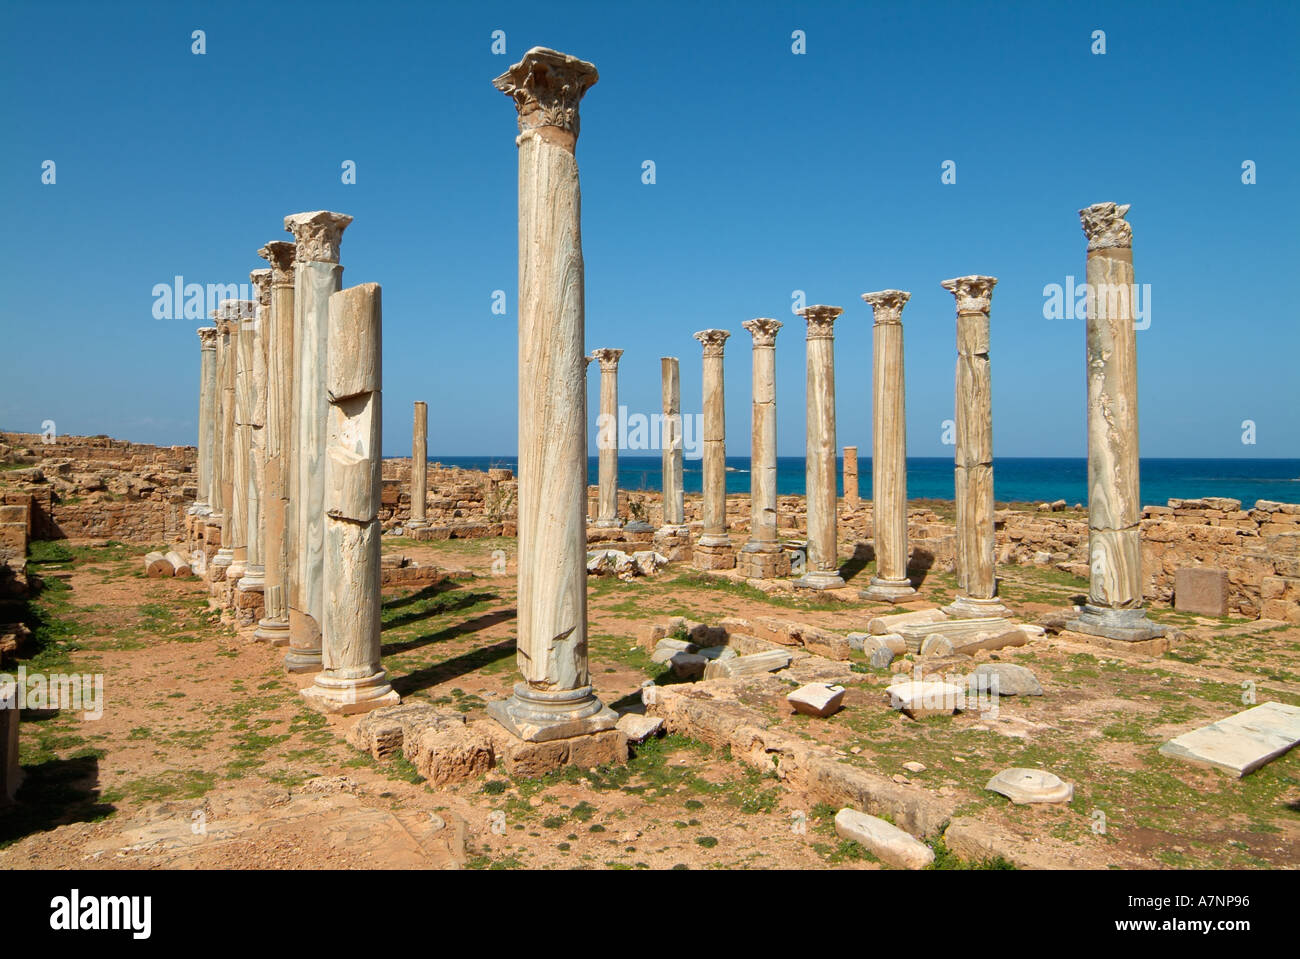 Eglise orientale, Apollonia, Grec / Roman ruins, Libye Banque D'Images